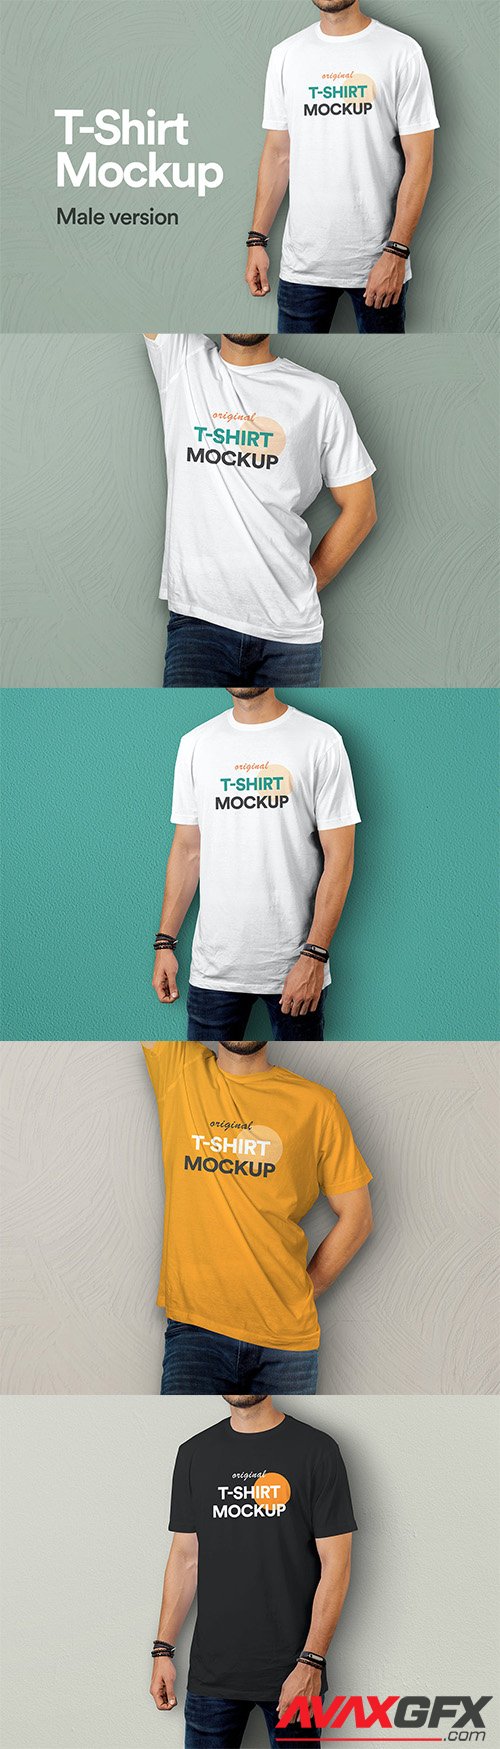 T-Shirt Mockup Vol 09